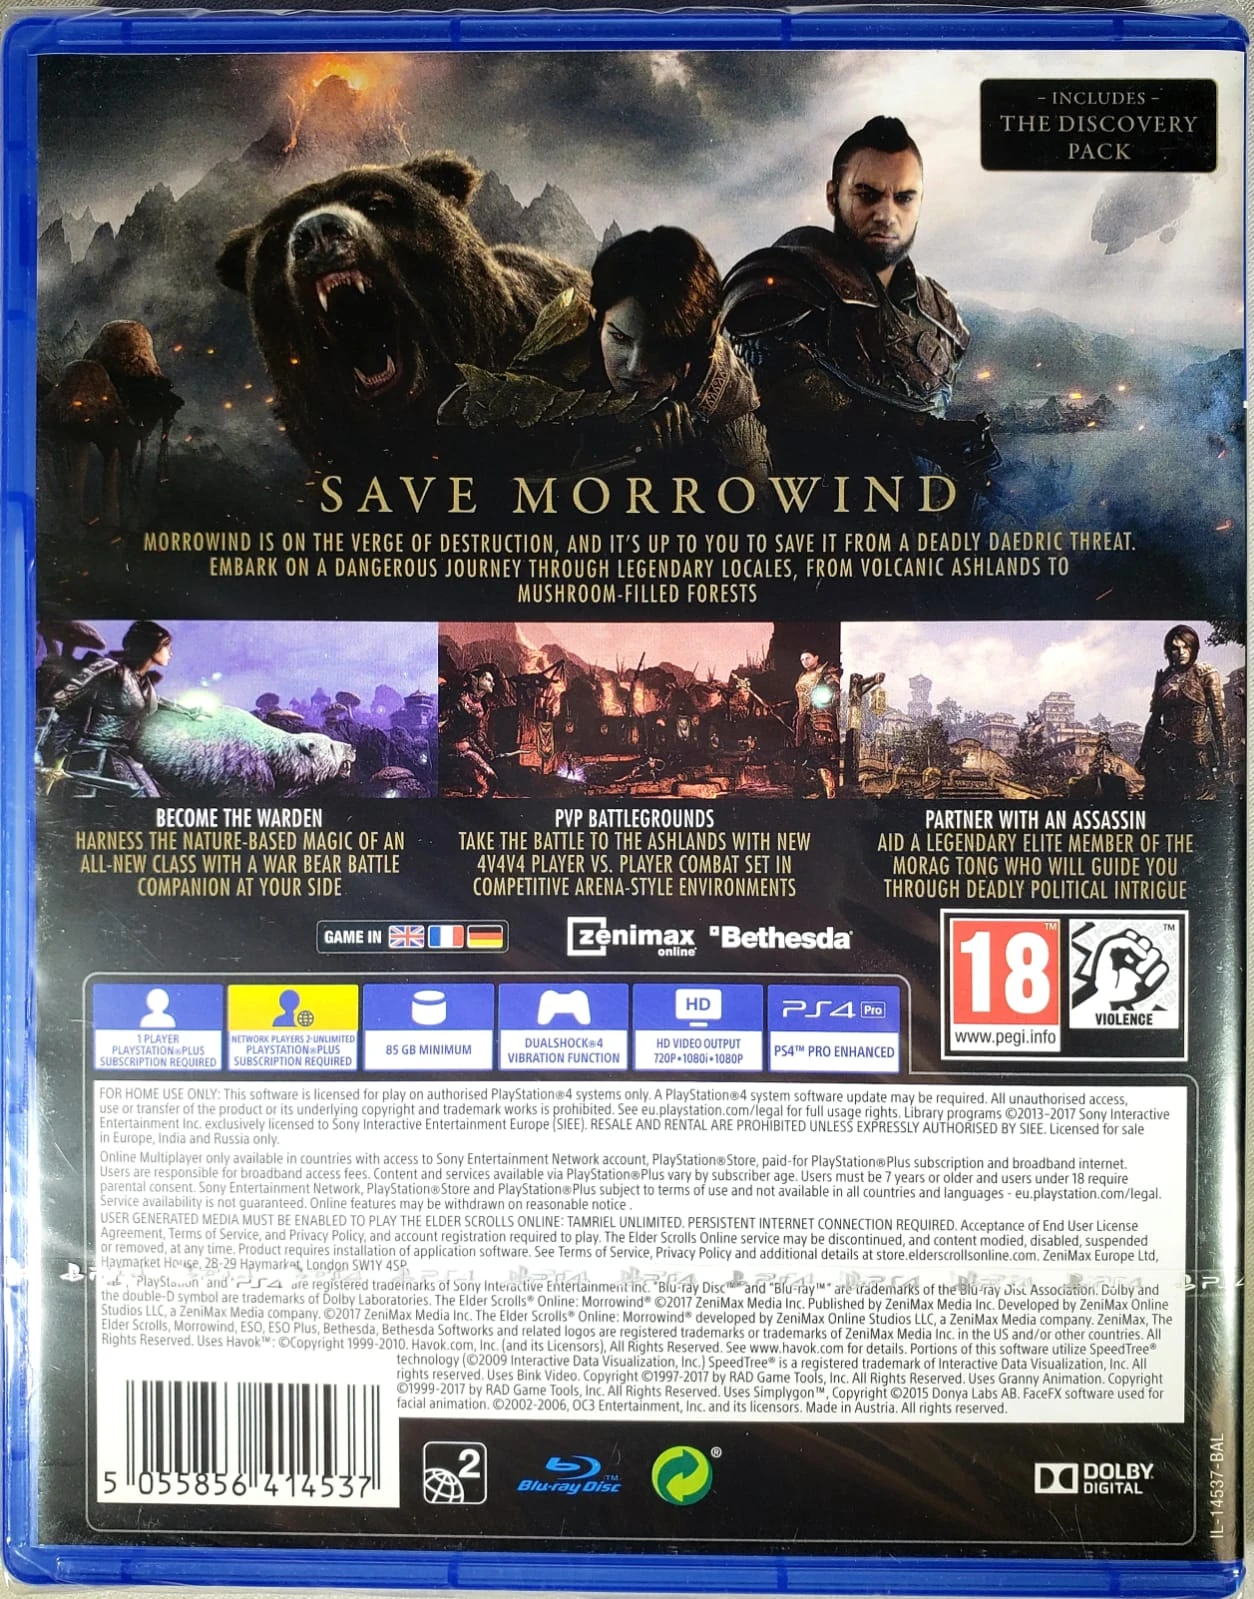 The Elder Scrolls Online: Morrowind (EUR)